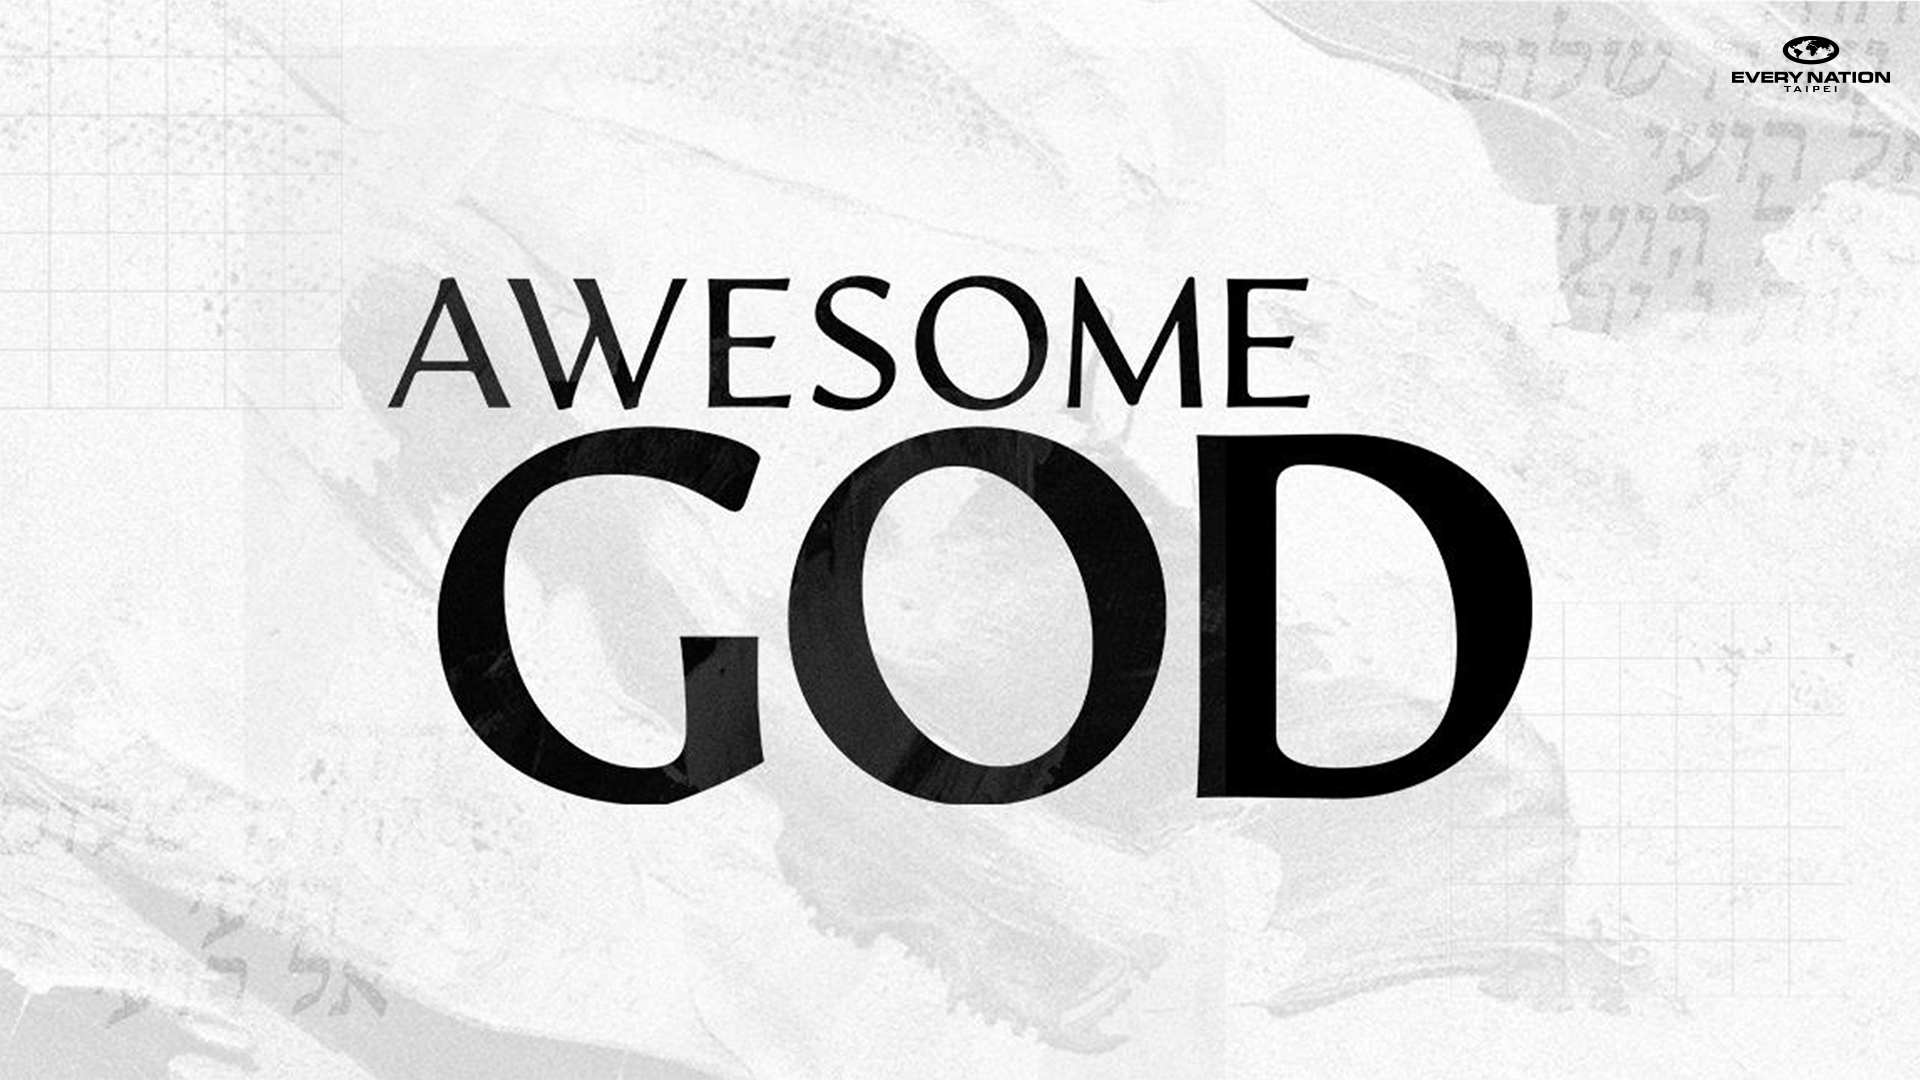 Awesome God: El Roi